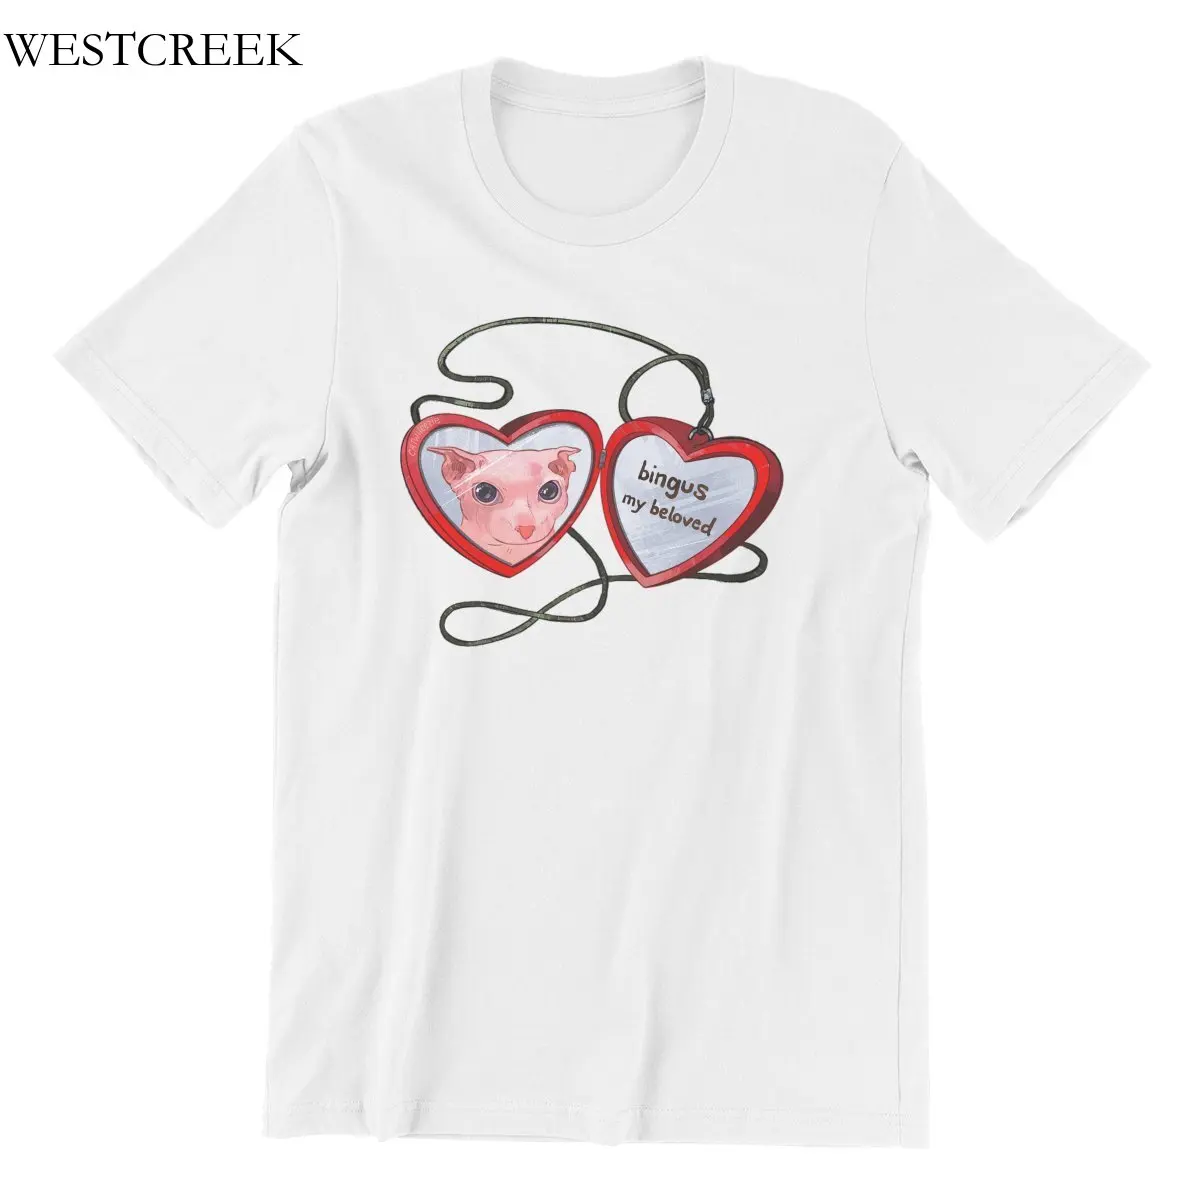 

Оптовая продажа, WESTCREEK Bingus, моя любимая хлопковая футболка, мужские футболки, мужская одежда 185174